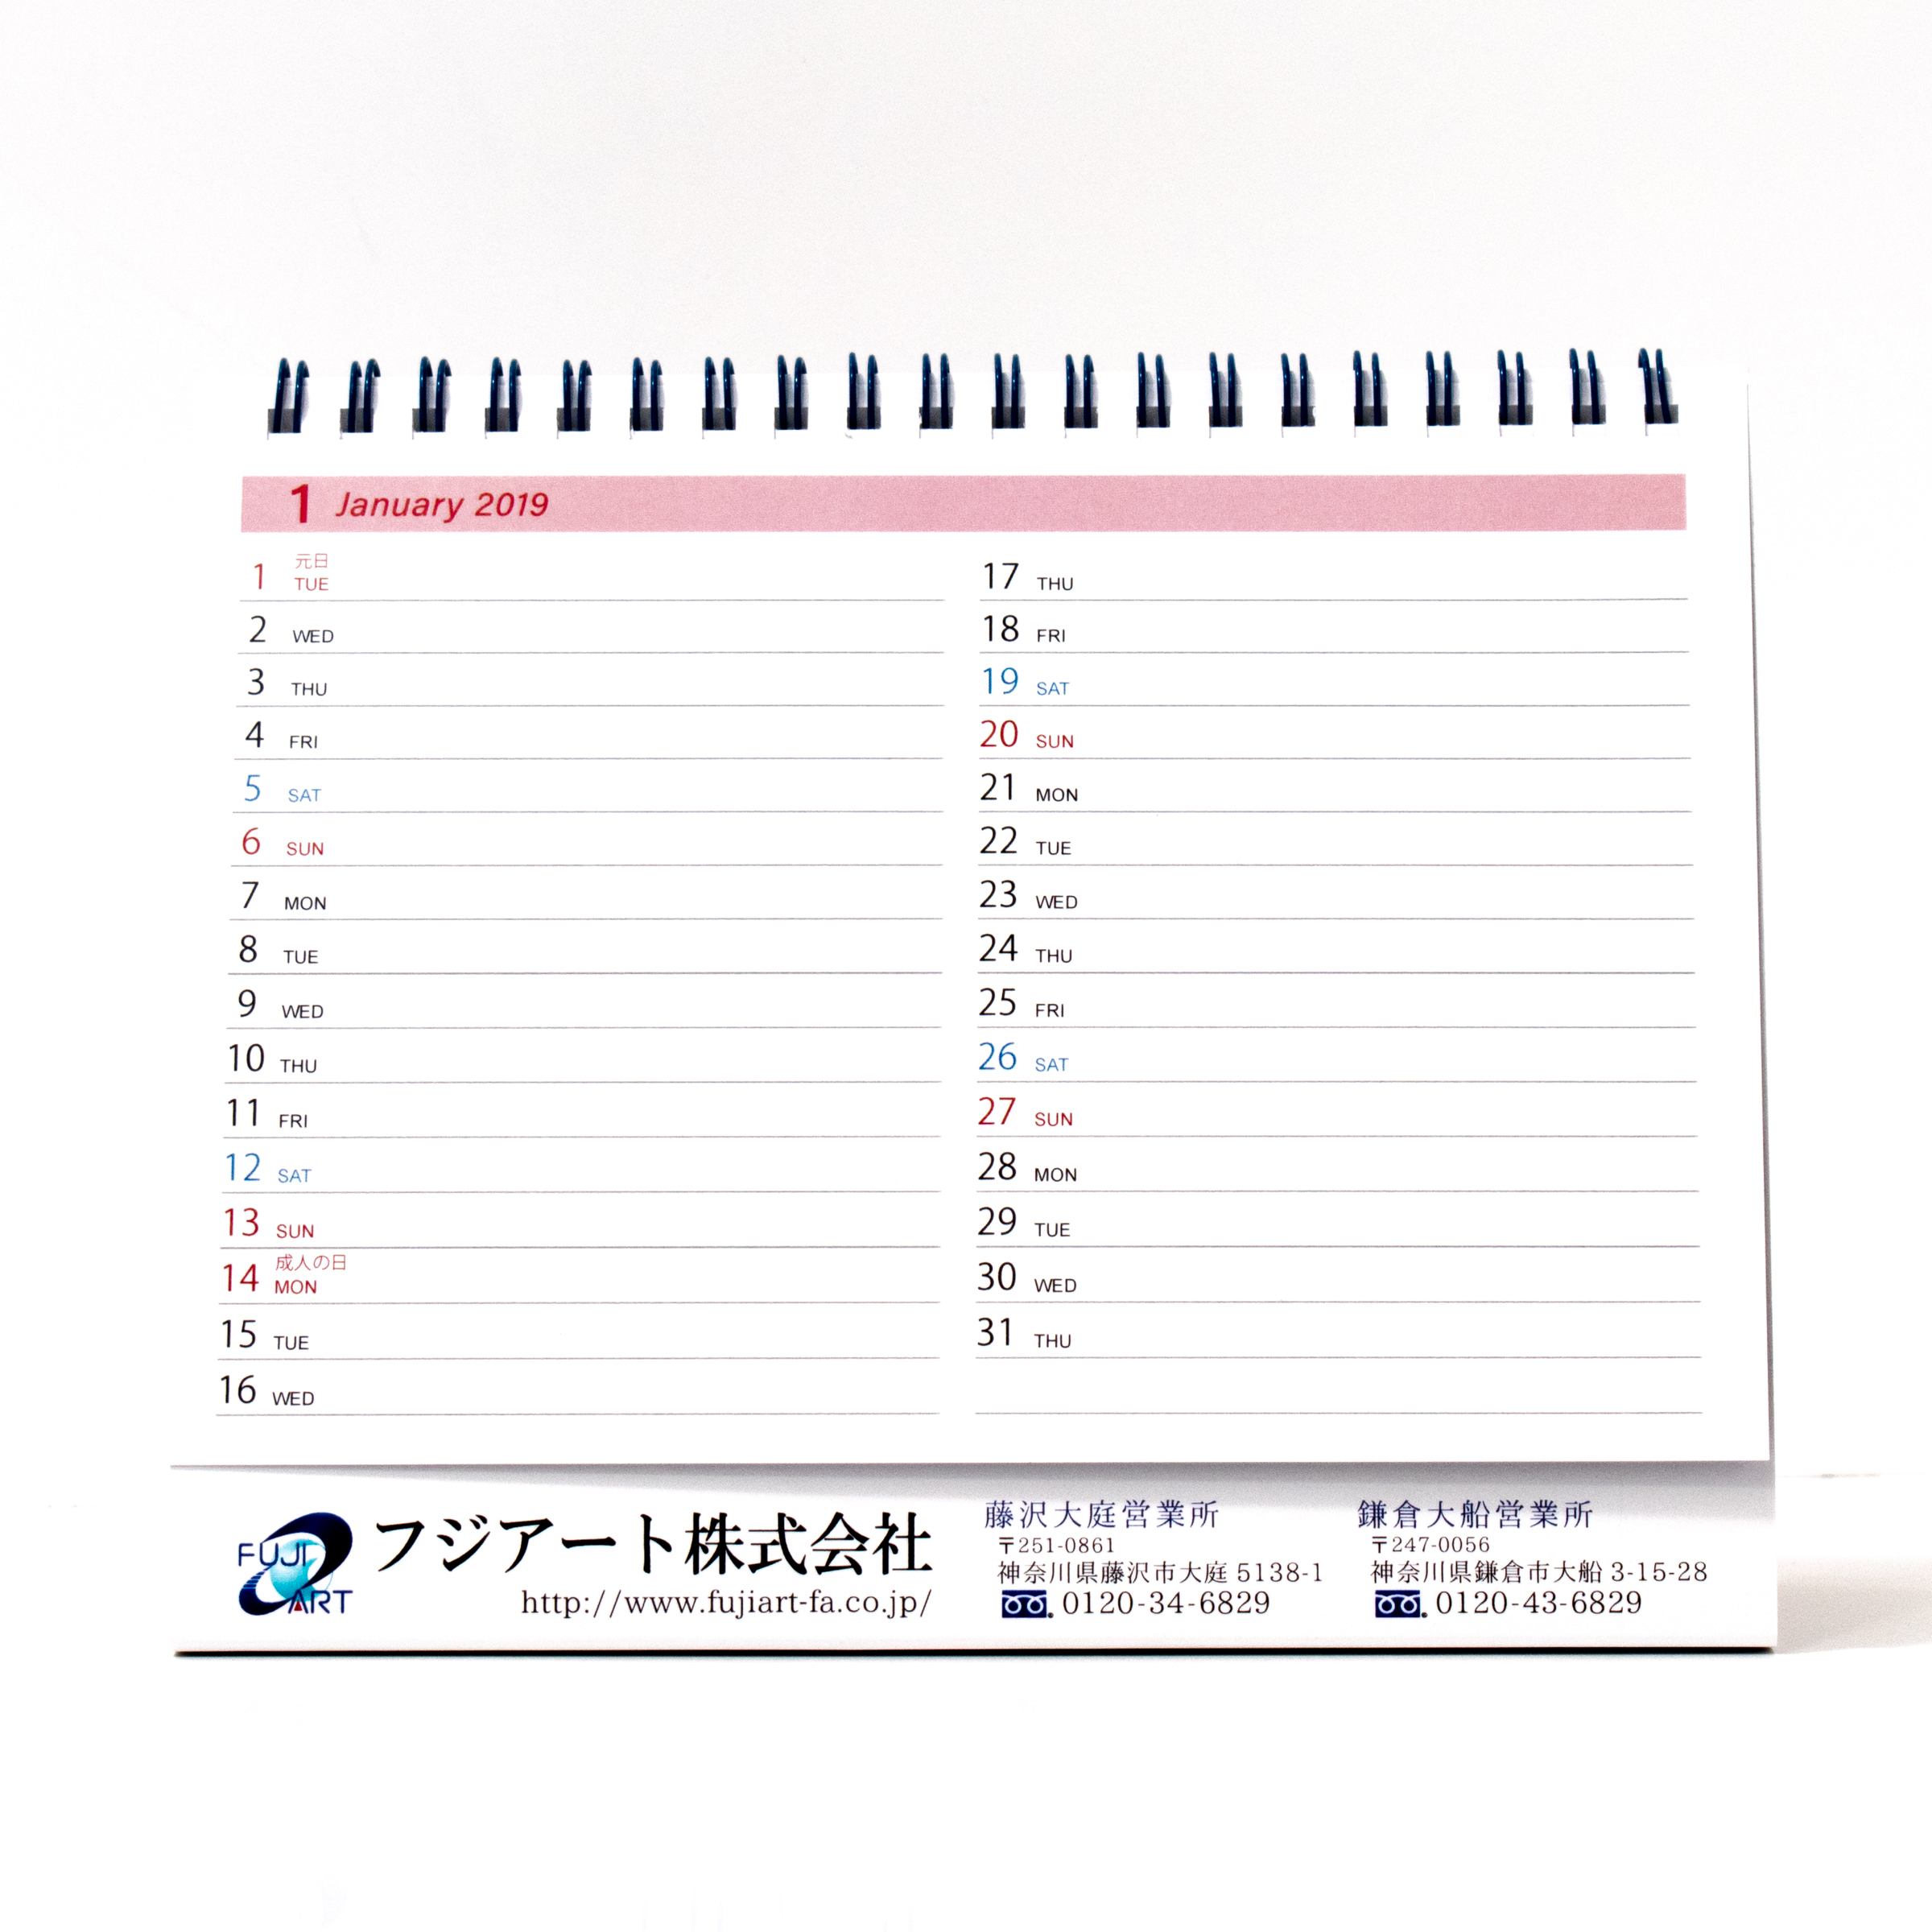 「フジアート株式会社 様」製作のオリジナルカレンダー ギャラリー写真2